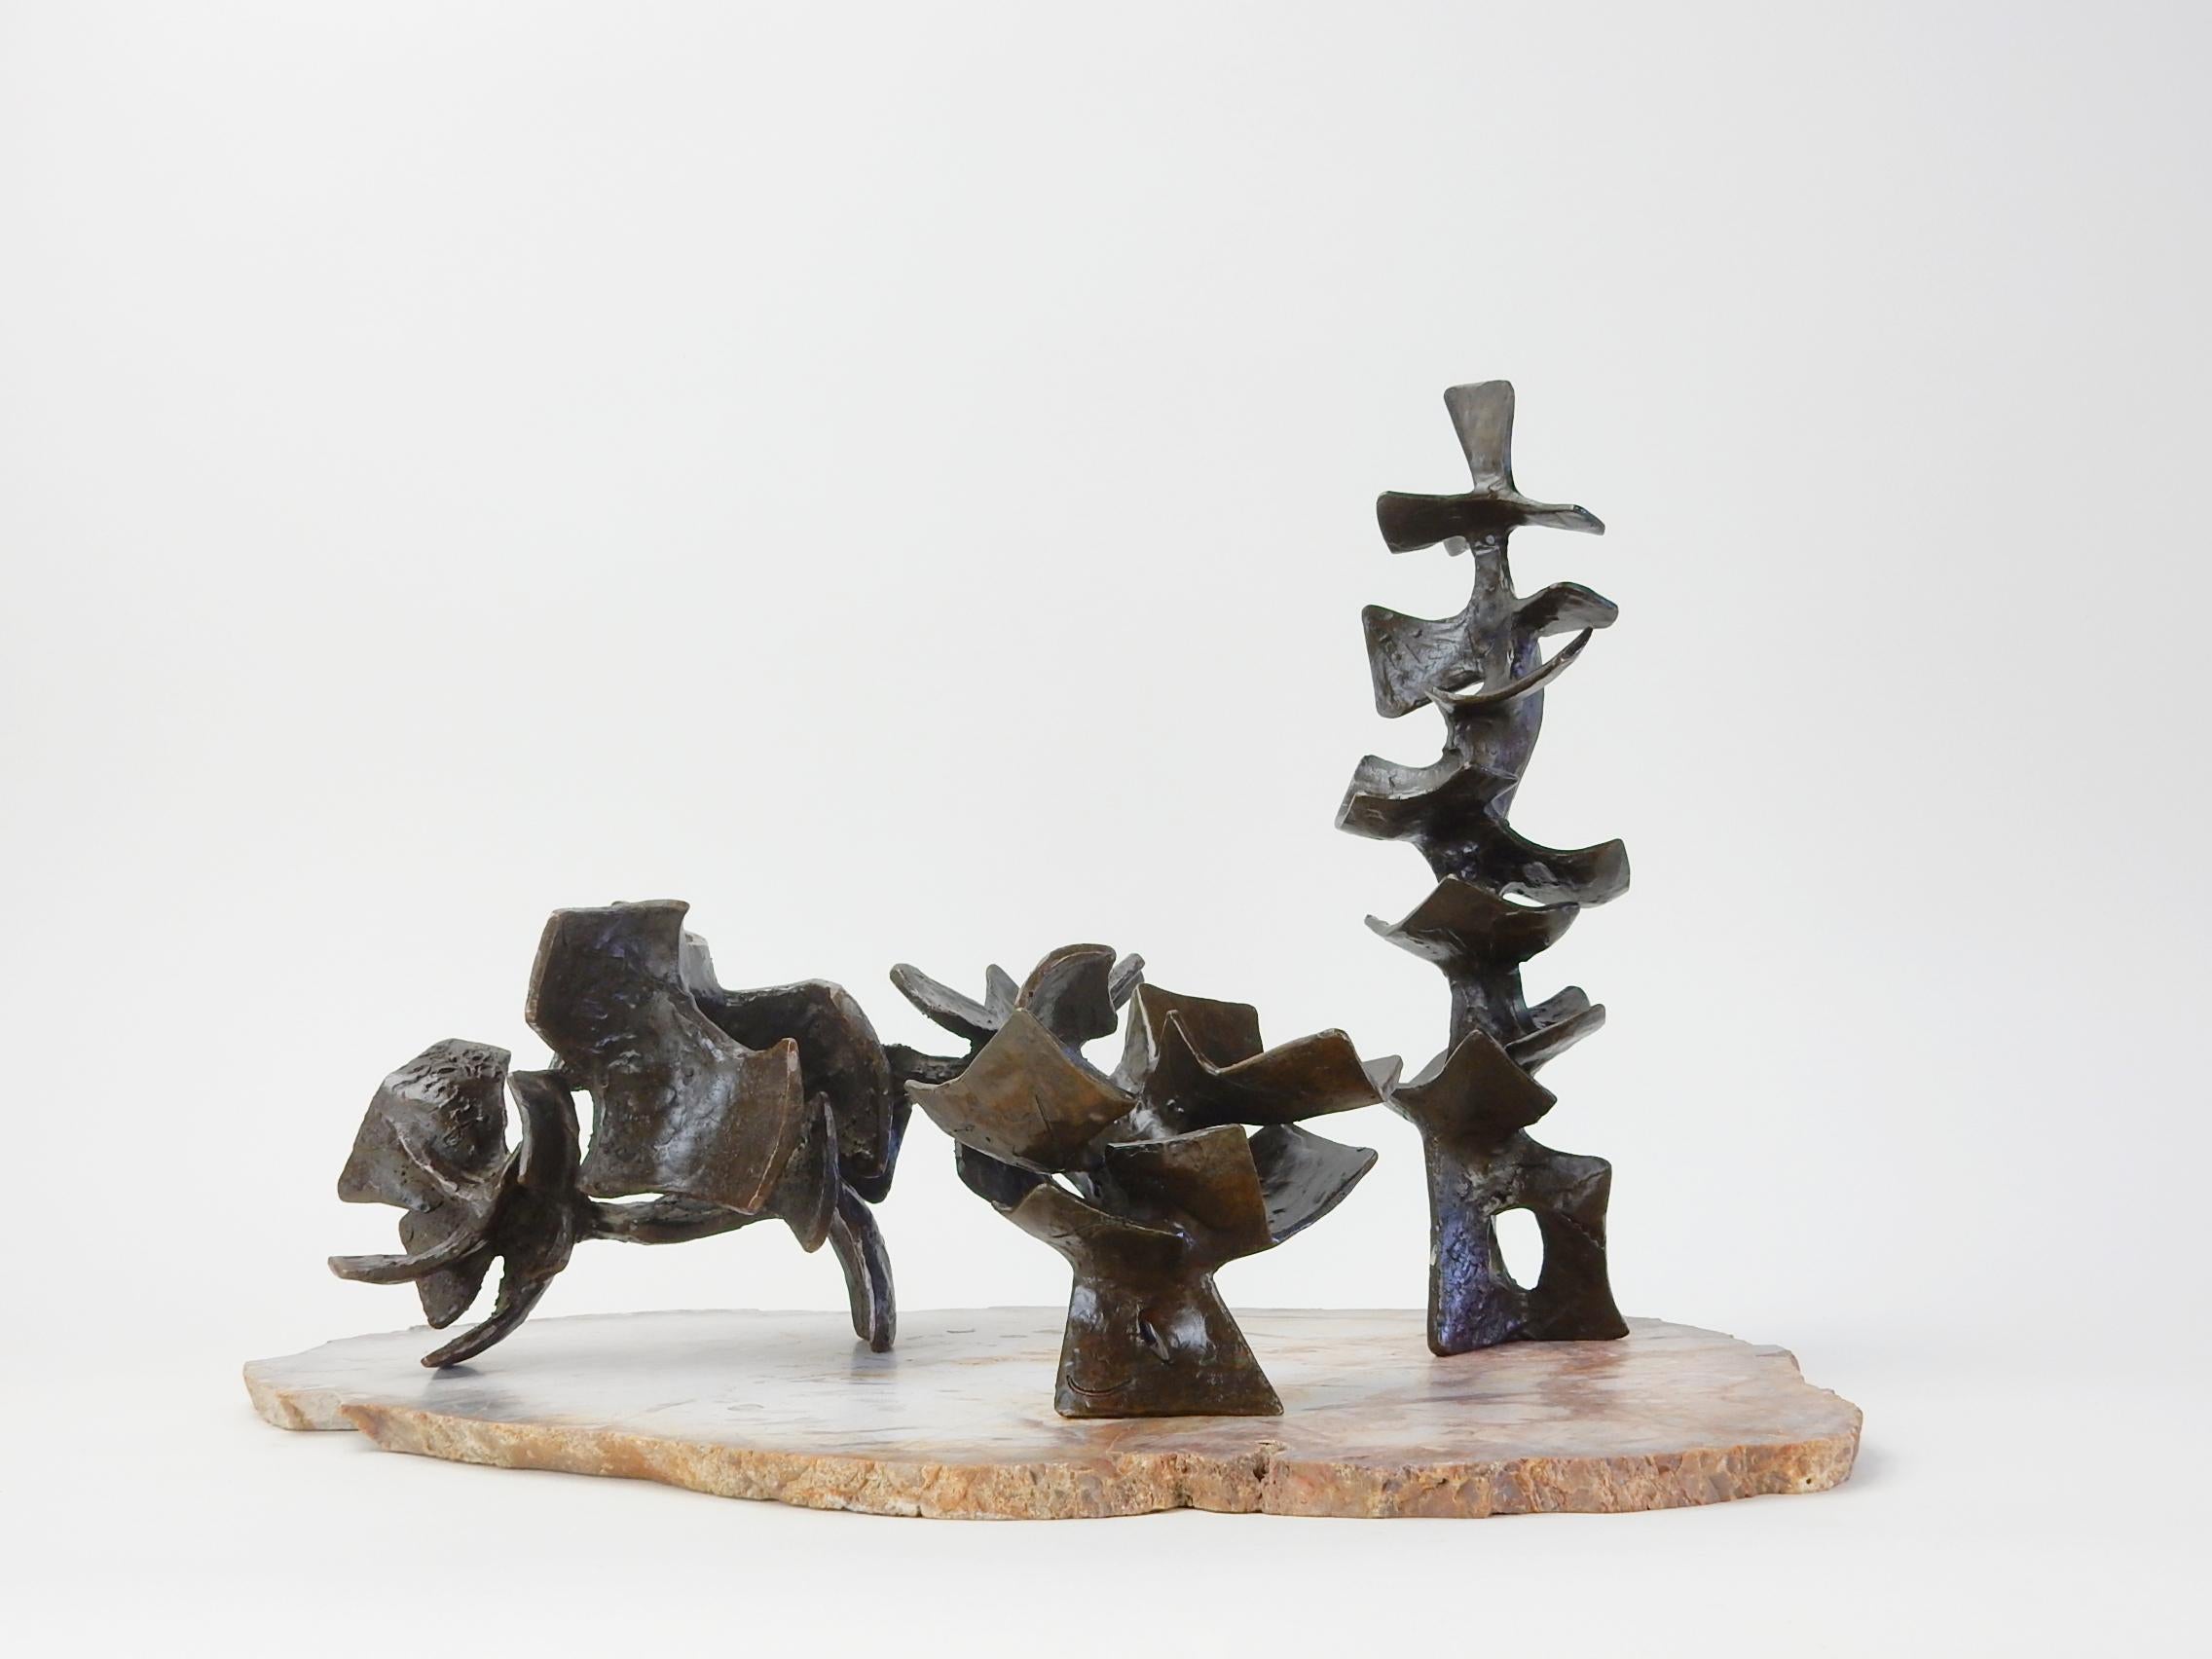 Ensemble de 3 sculptures abstraites en bronze massif disposées sur une ardoise de racine de palmier pétrifié finement tranchée.
Des formes organiques dans le style du sculpteur Henry Moore.
Chacune est signée G. W. Hall et datée de 1958 et